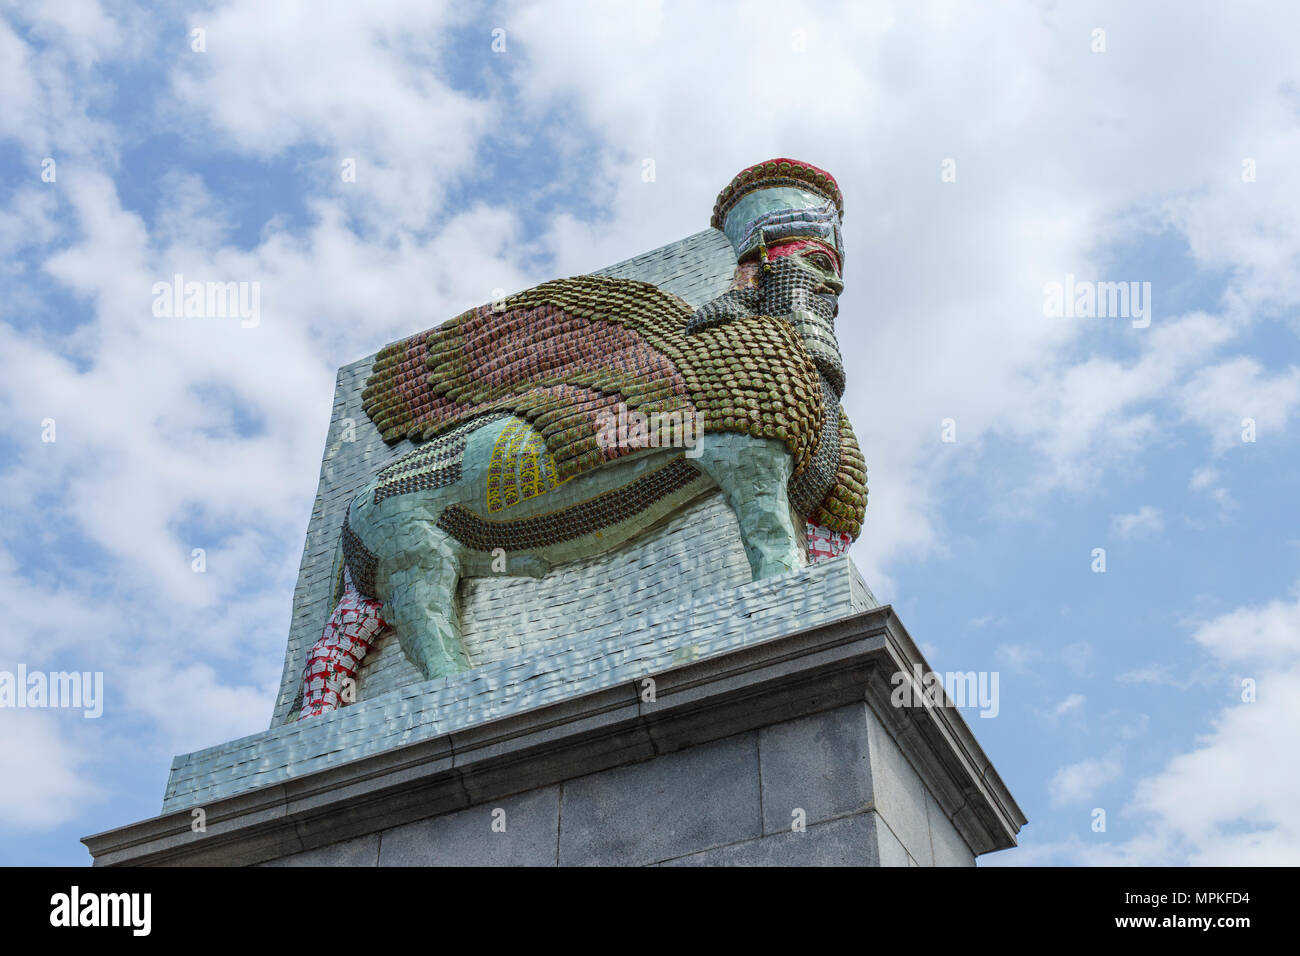 Assyrische Lamassu Statue, die unsichtbaren Feind nicht existieren sollte, Fourth Plinth, Trafalgar Square, Charing Cross, Westminster, London WC2 Stockfoto